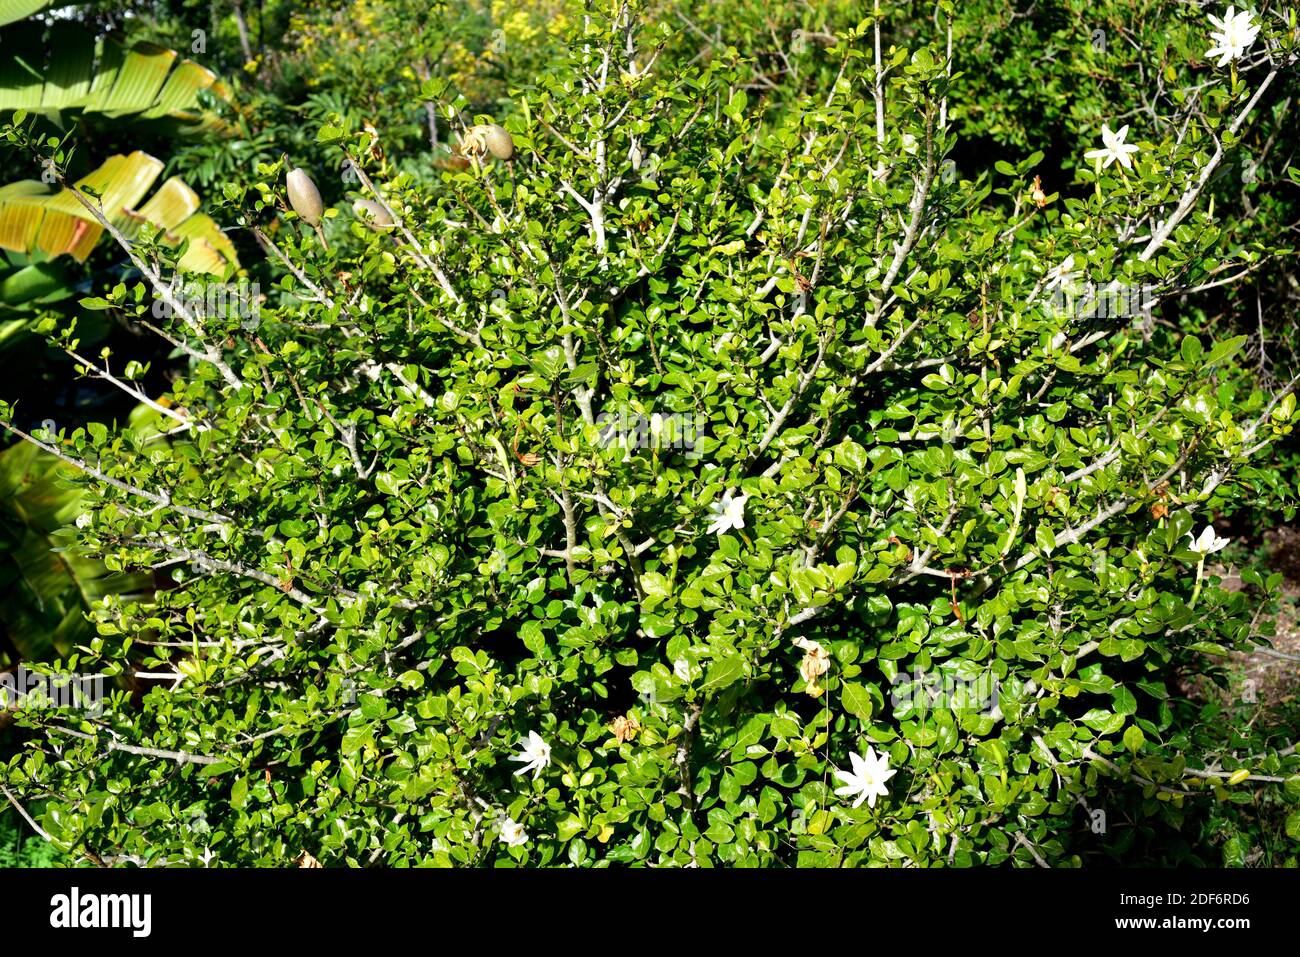 Forest gardenia or tree gardenia (Gardenia thunbergia) is a shrub endemic to southern Africa. Stock Photo